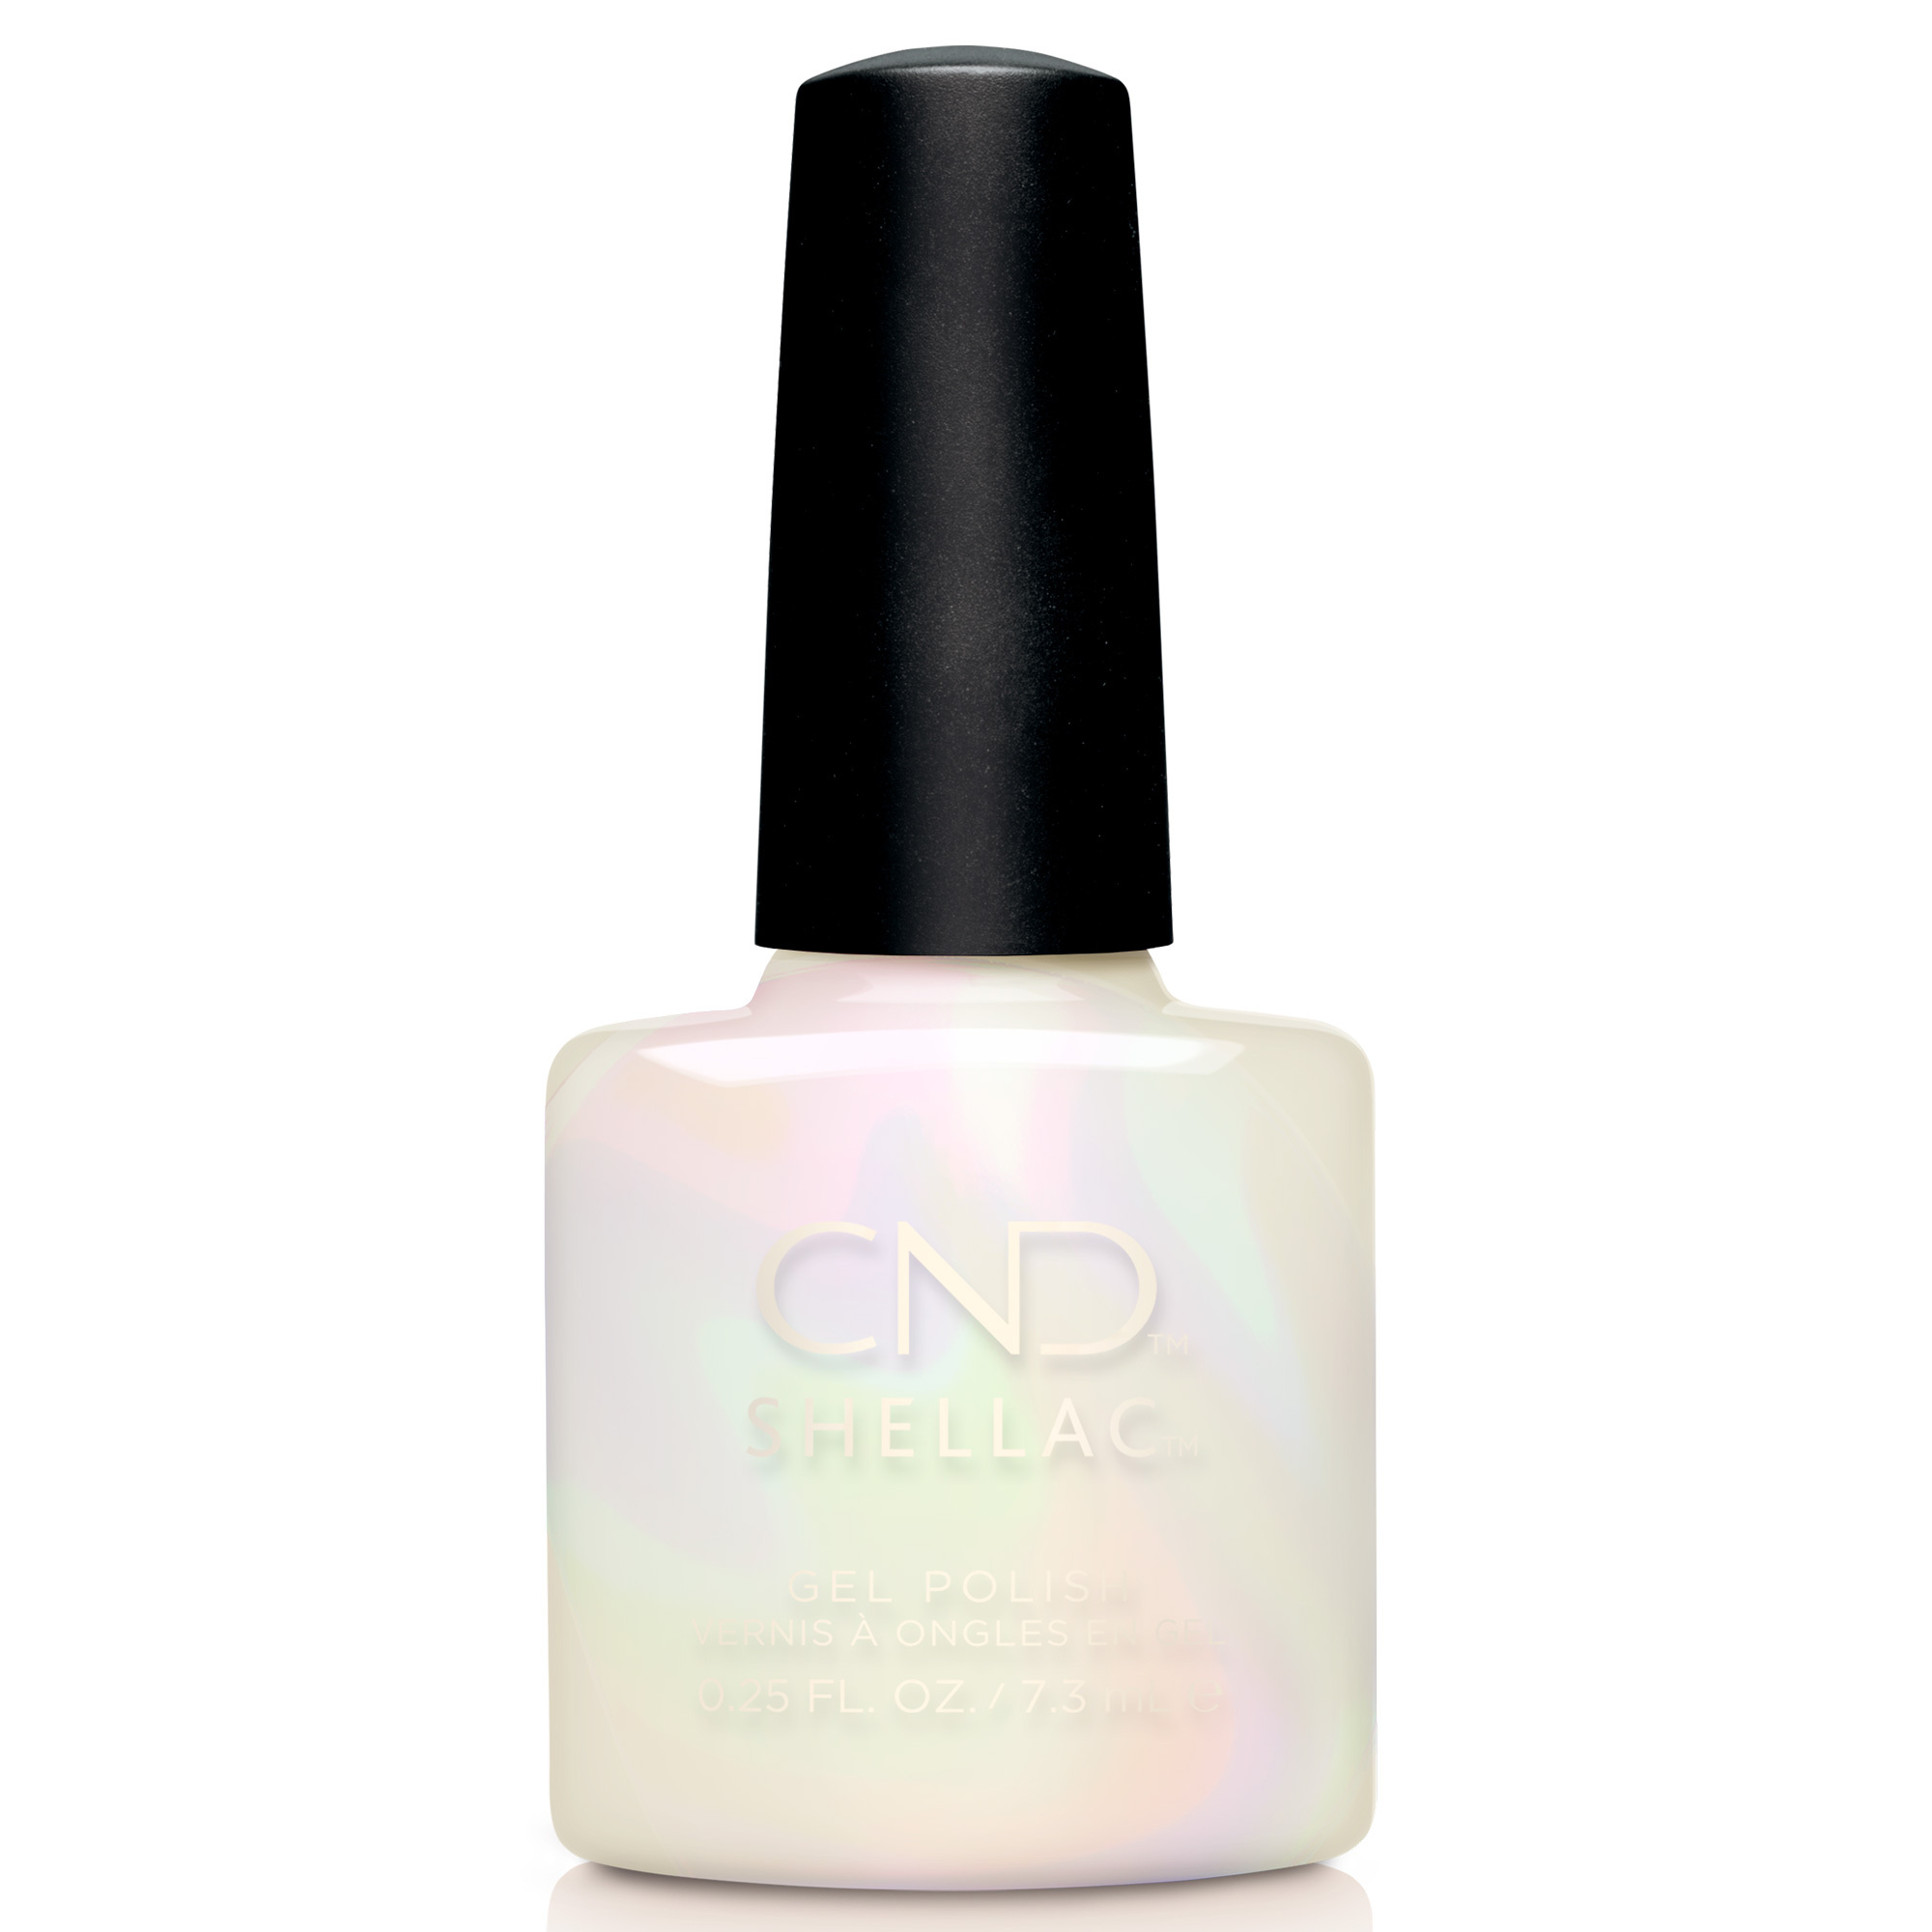 CND Shellac - Keep An Opal Mind